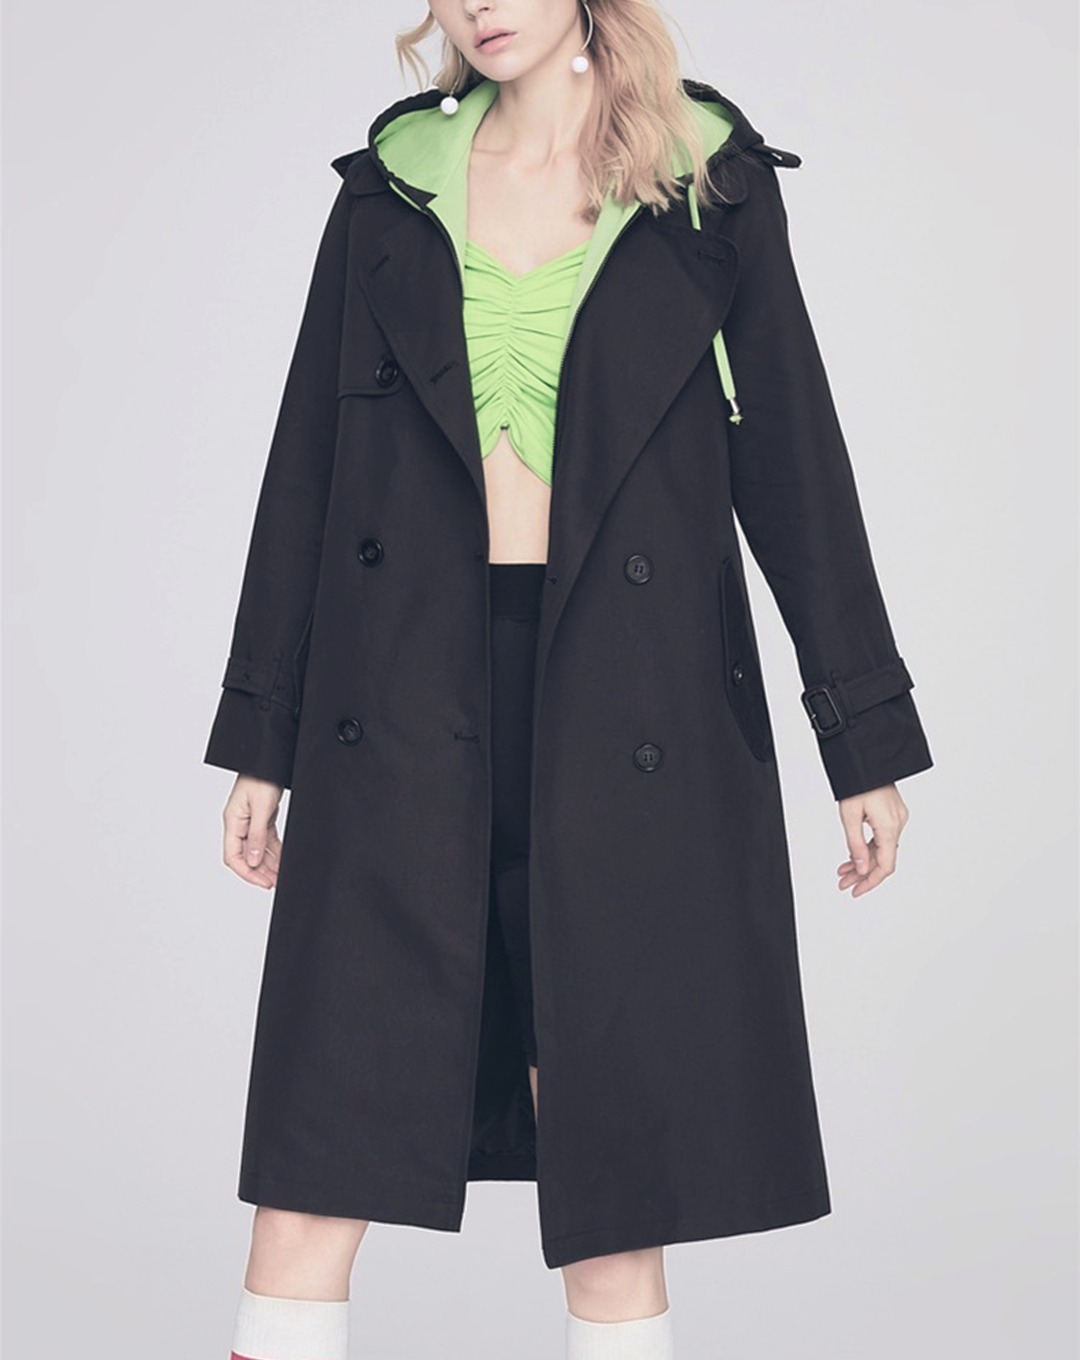 ♀Neon Green Hood Trench Coat